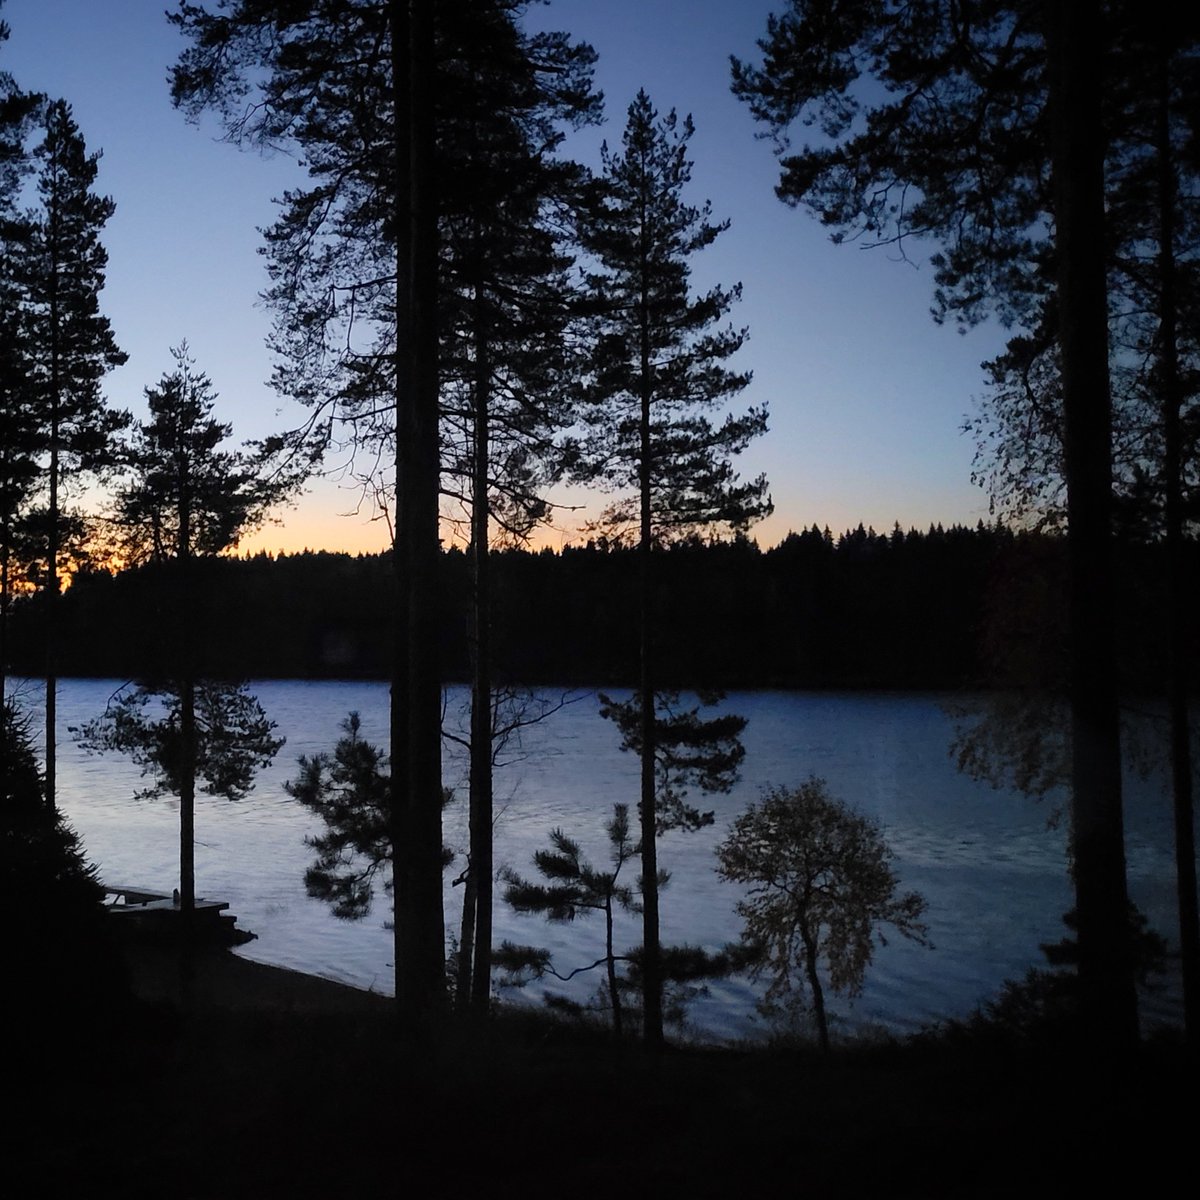 Kylmältä näyttää aamu.
#hyväähuomenta #goodmorning #bonjour  #photo #Finland